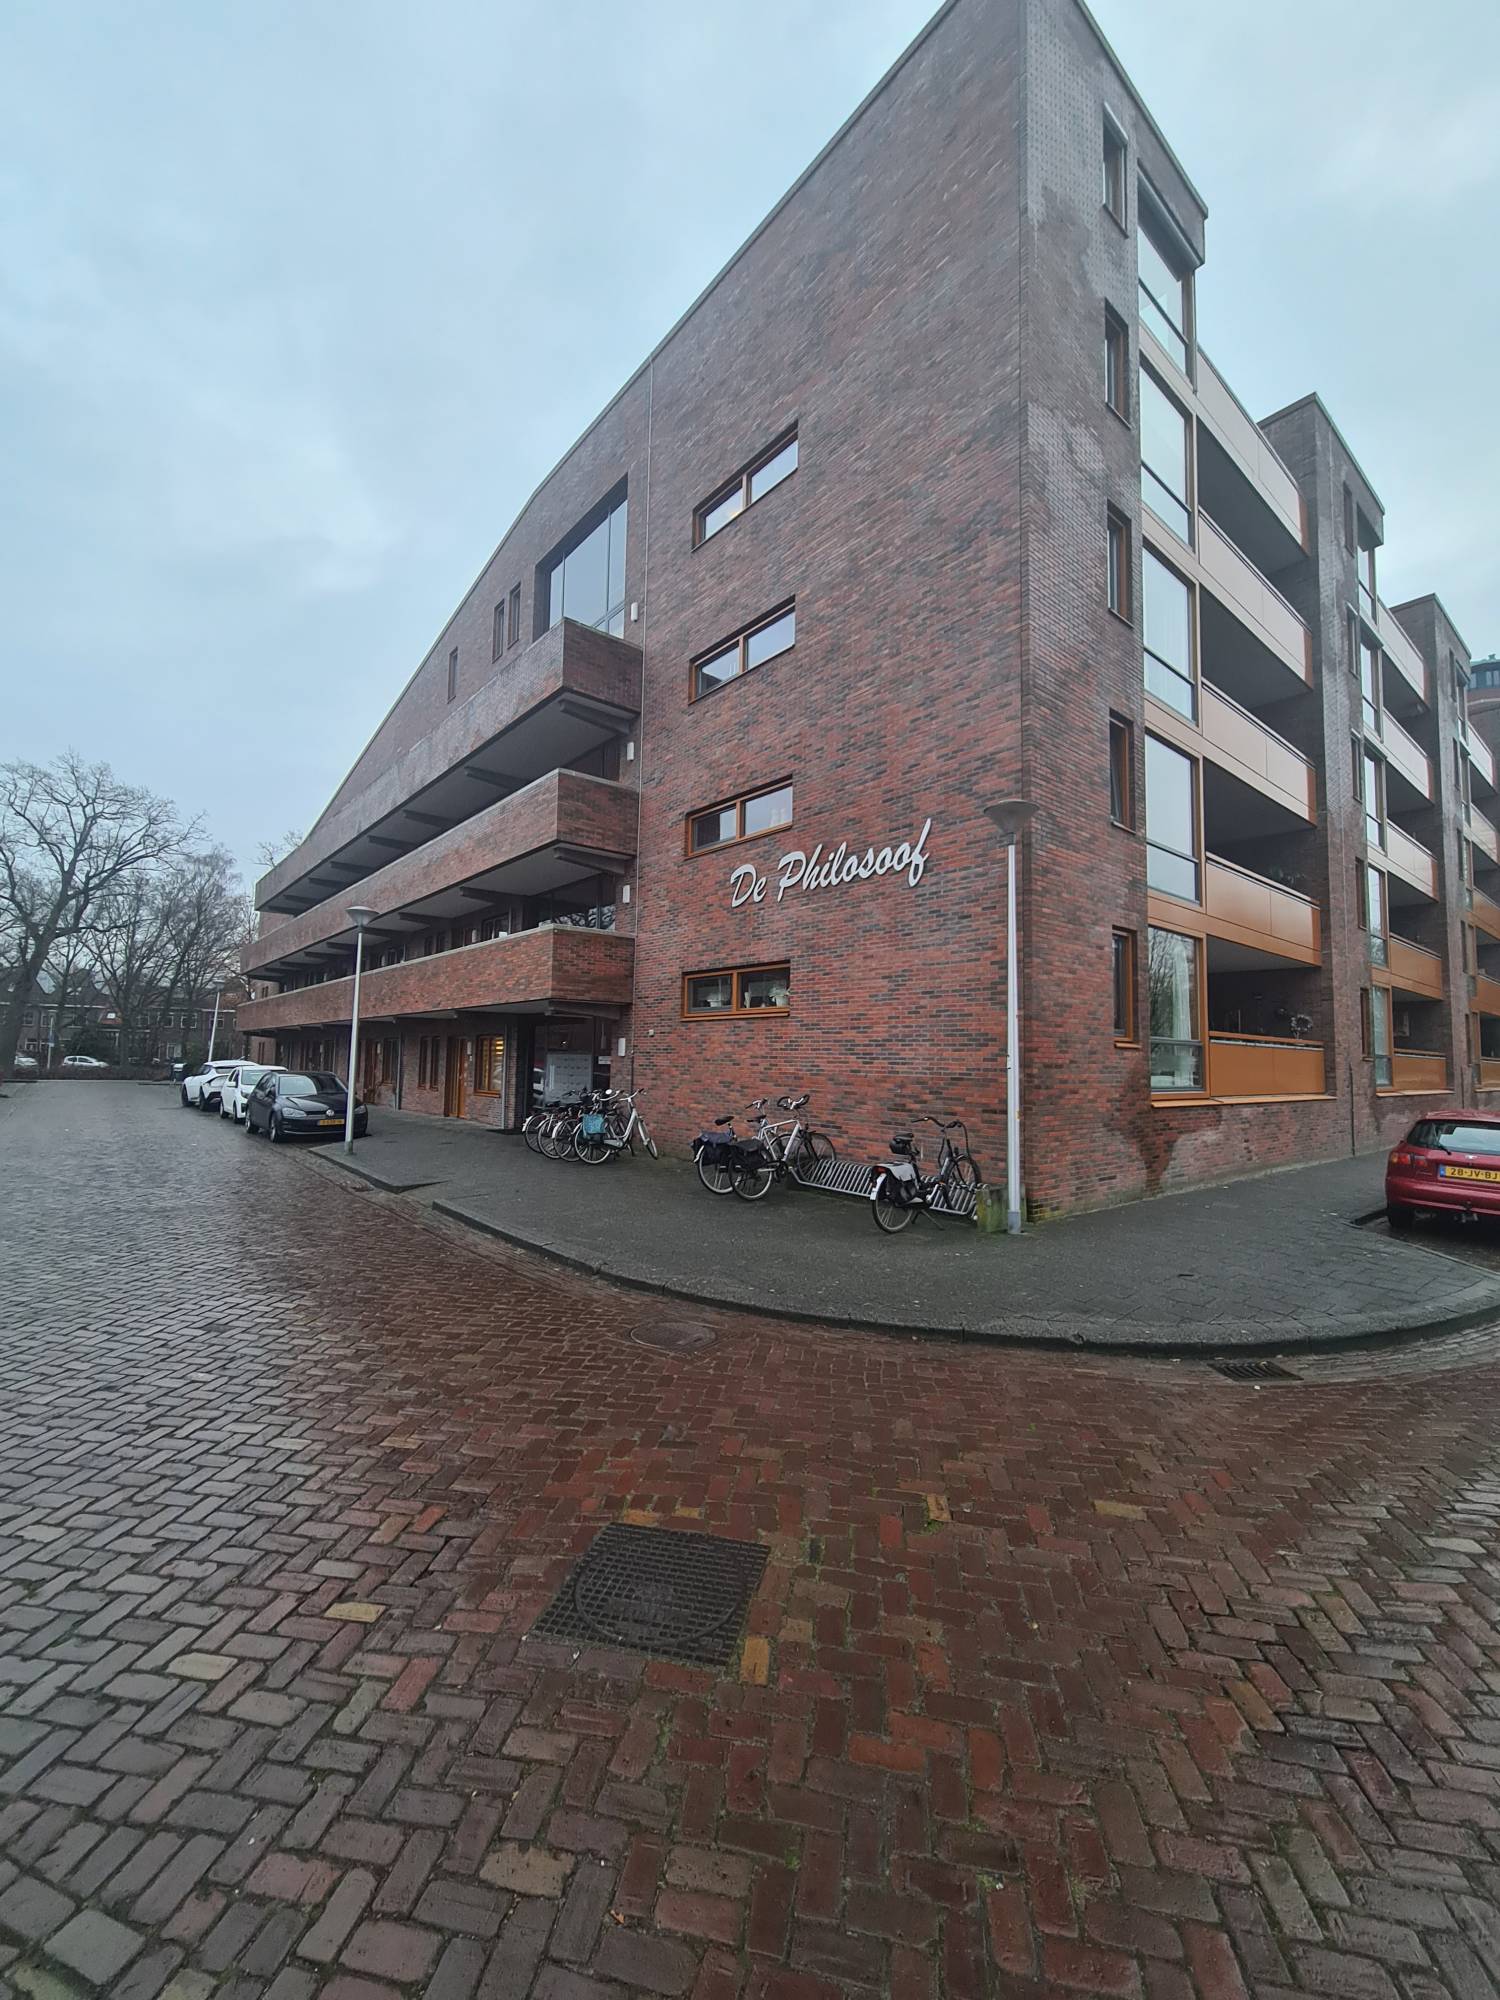 Bekijk foto 1/18 van apartment in Zwolle